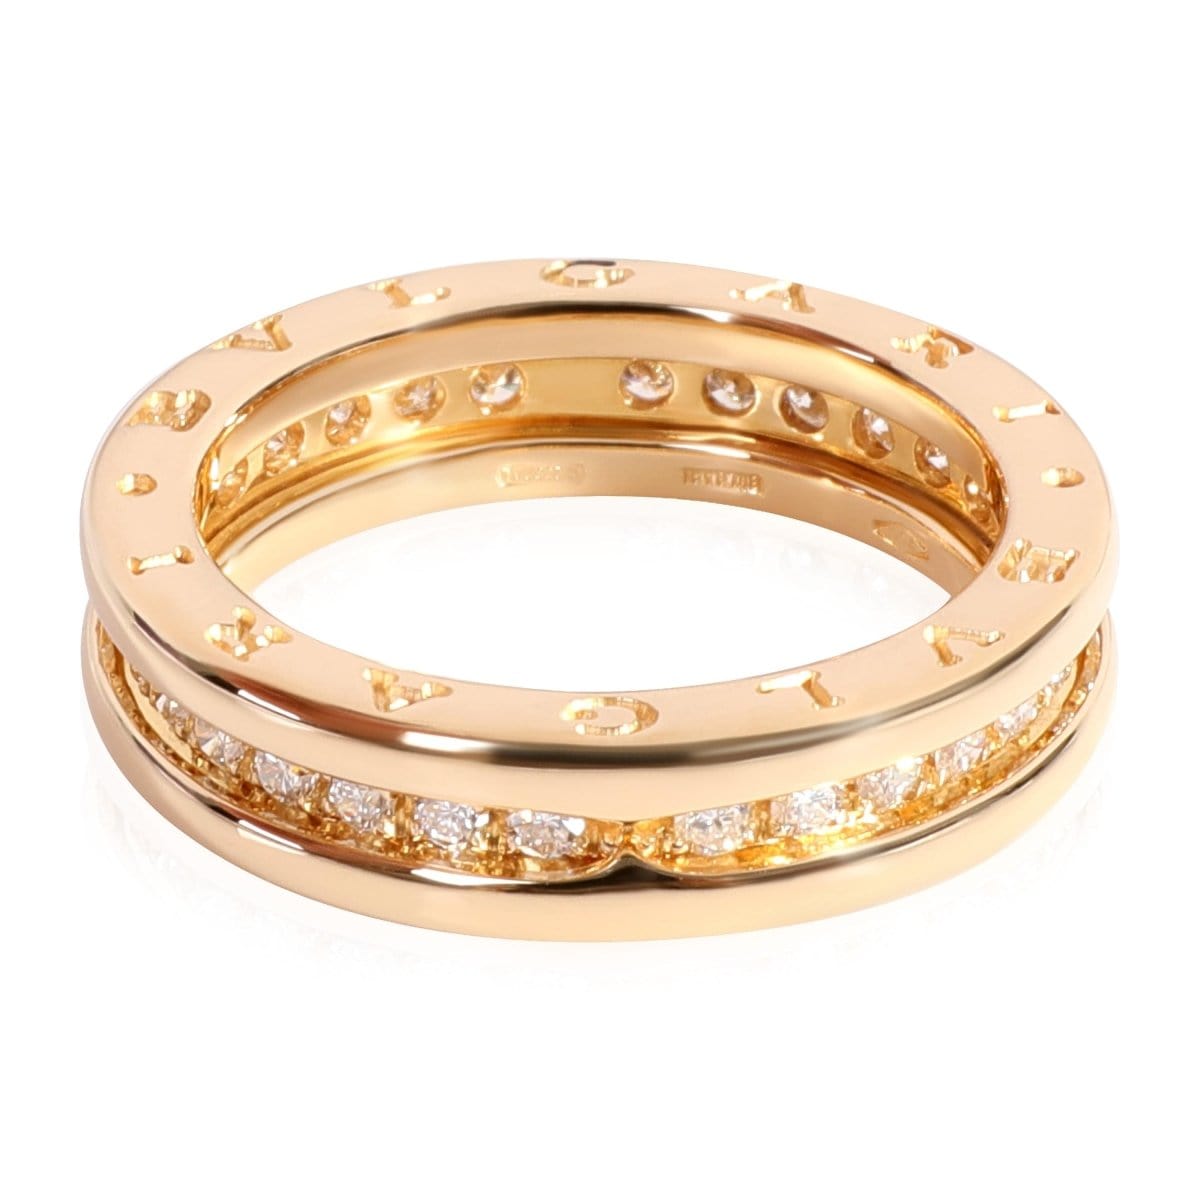 118616, BVLGARI B.Zero1 Diamond Ring in 18k Yellow Gold 0.45 CTW, Size 49